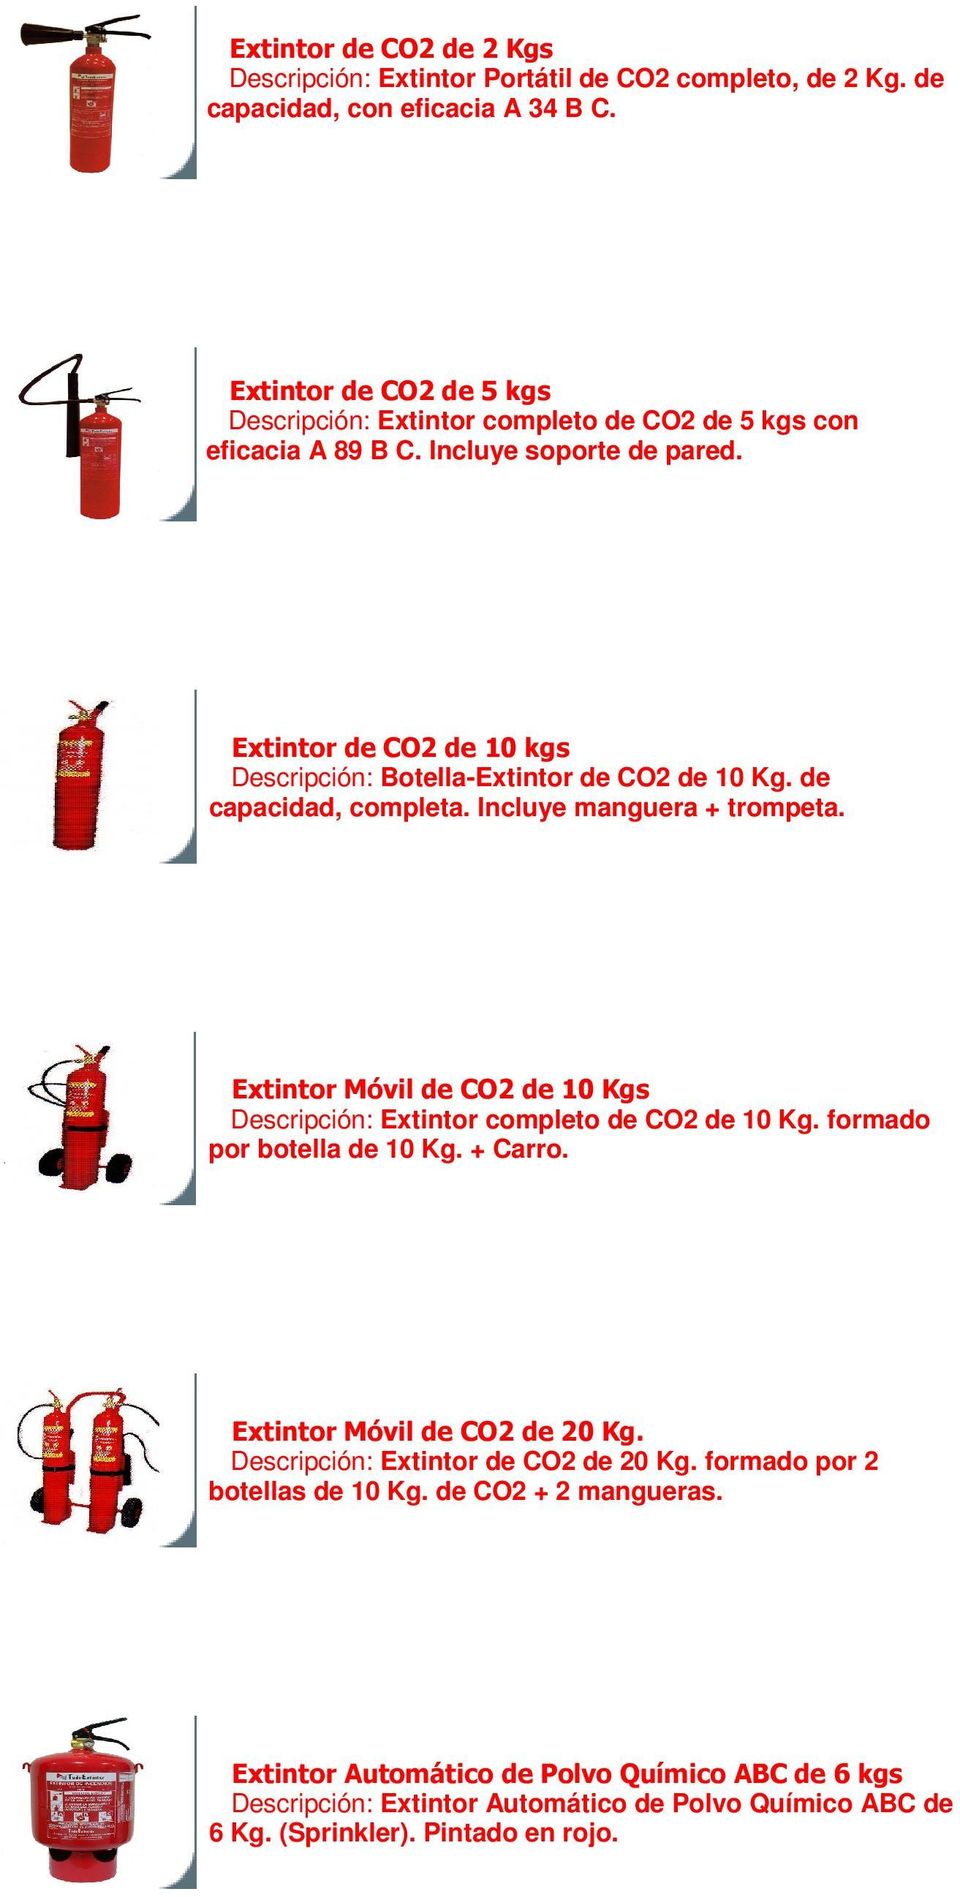 Extintor de CO2 de 10 kgs Descripción: Botella-Extintor de CO2 de 10 Kg. de capacidad, completa. Incluye manguera + trompeta.